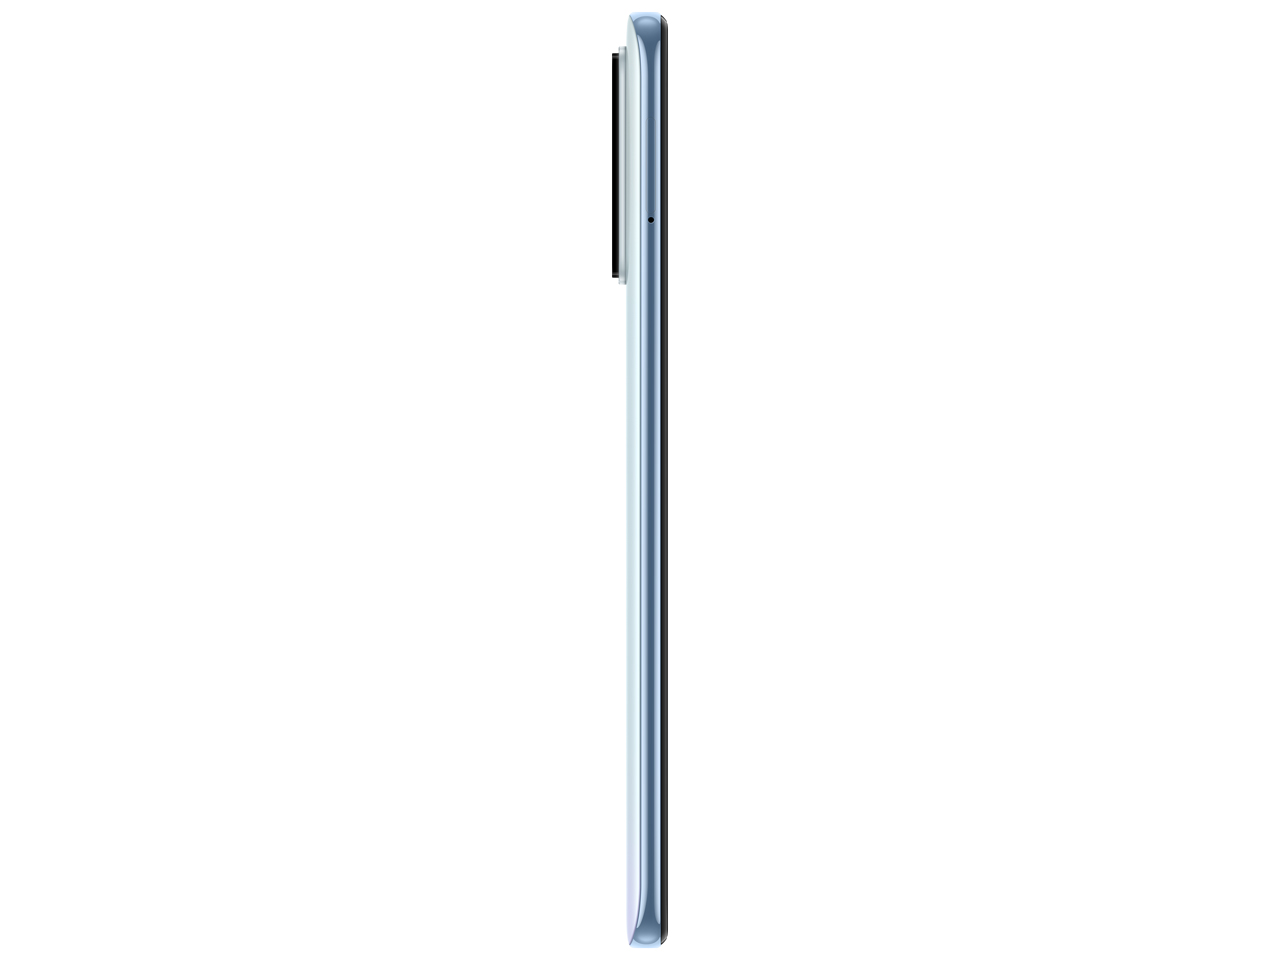 『本体 側面』 Redmi Note 10 Pro SIMフリー [グレイシャーブルー] の製品画像